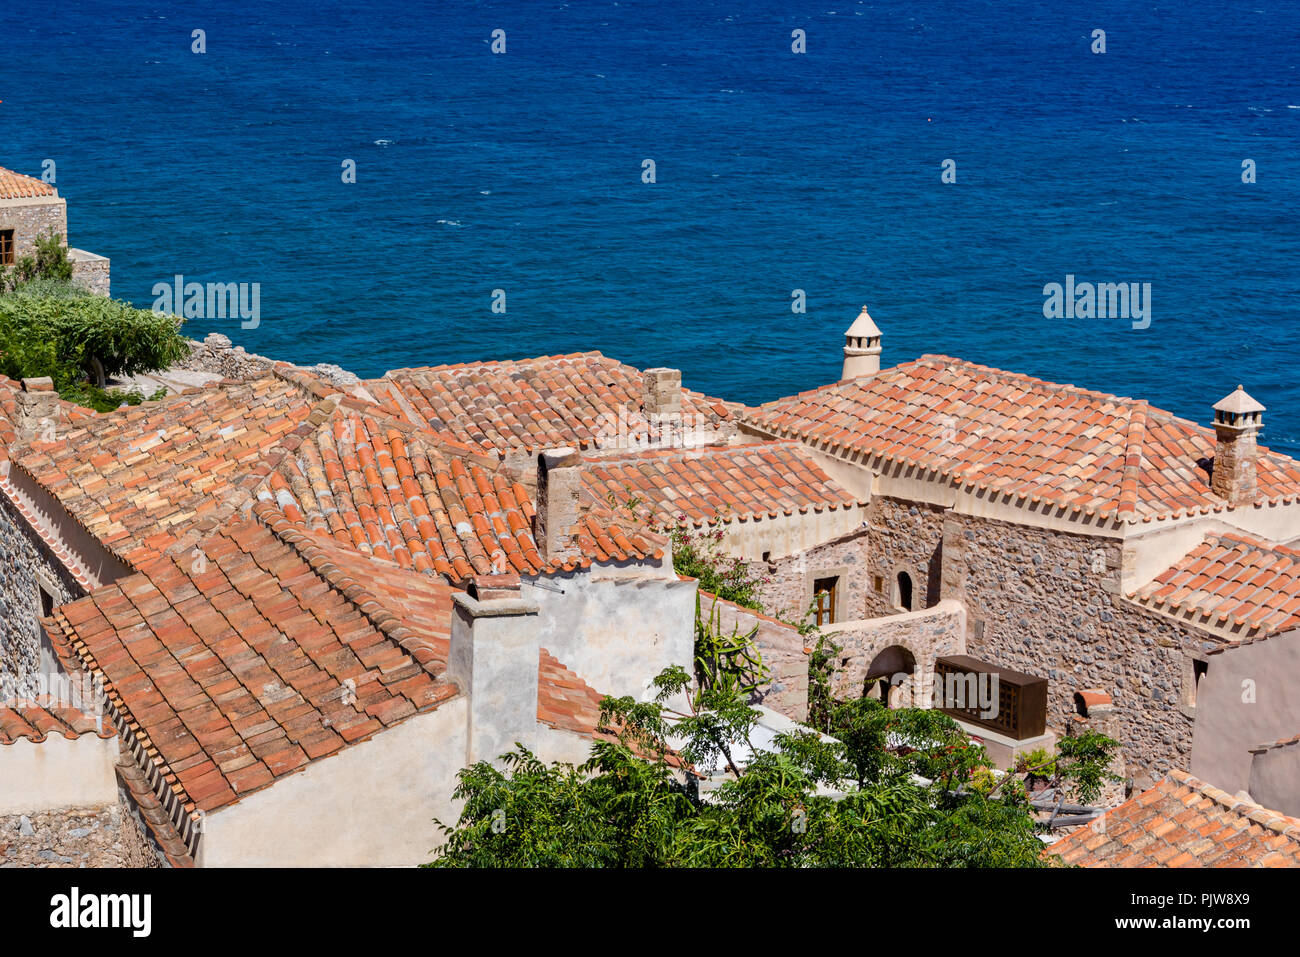 Traditionelle Dorf an der Küste auf der griechischen Insel mit rotem Schiefer Dächer, Schornsteine und Adobe Wände Stockfoto